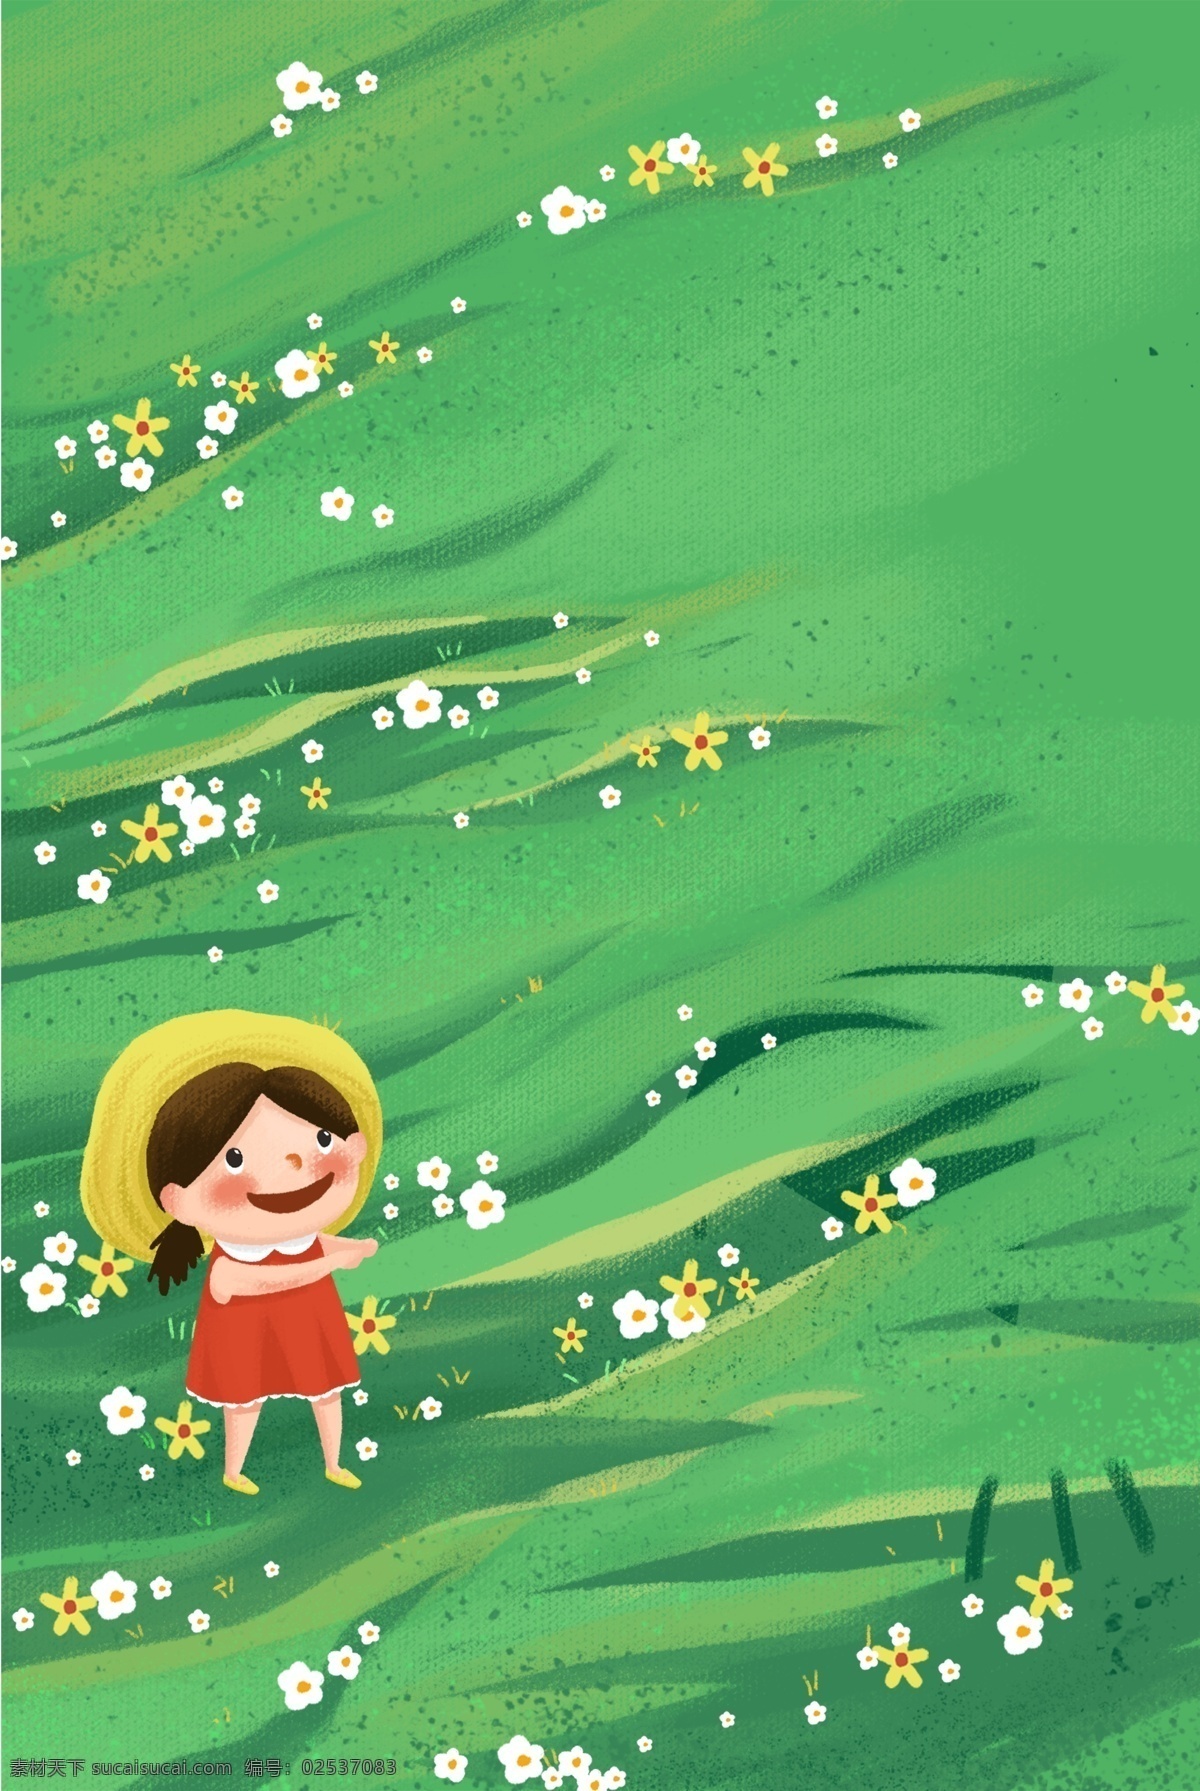 绿色 小 清新 女孩 背景 手绘 简约 小清新 草坪 草地 植物 小草 海报